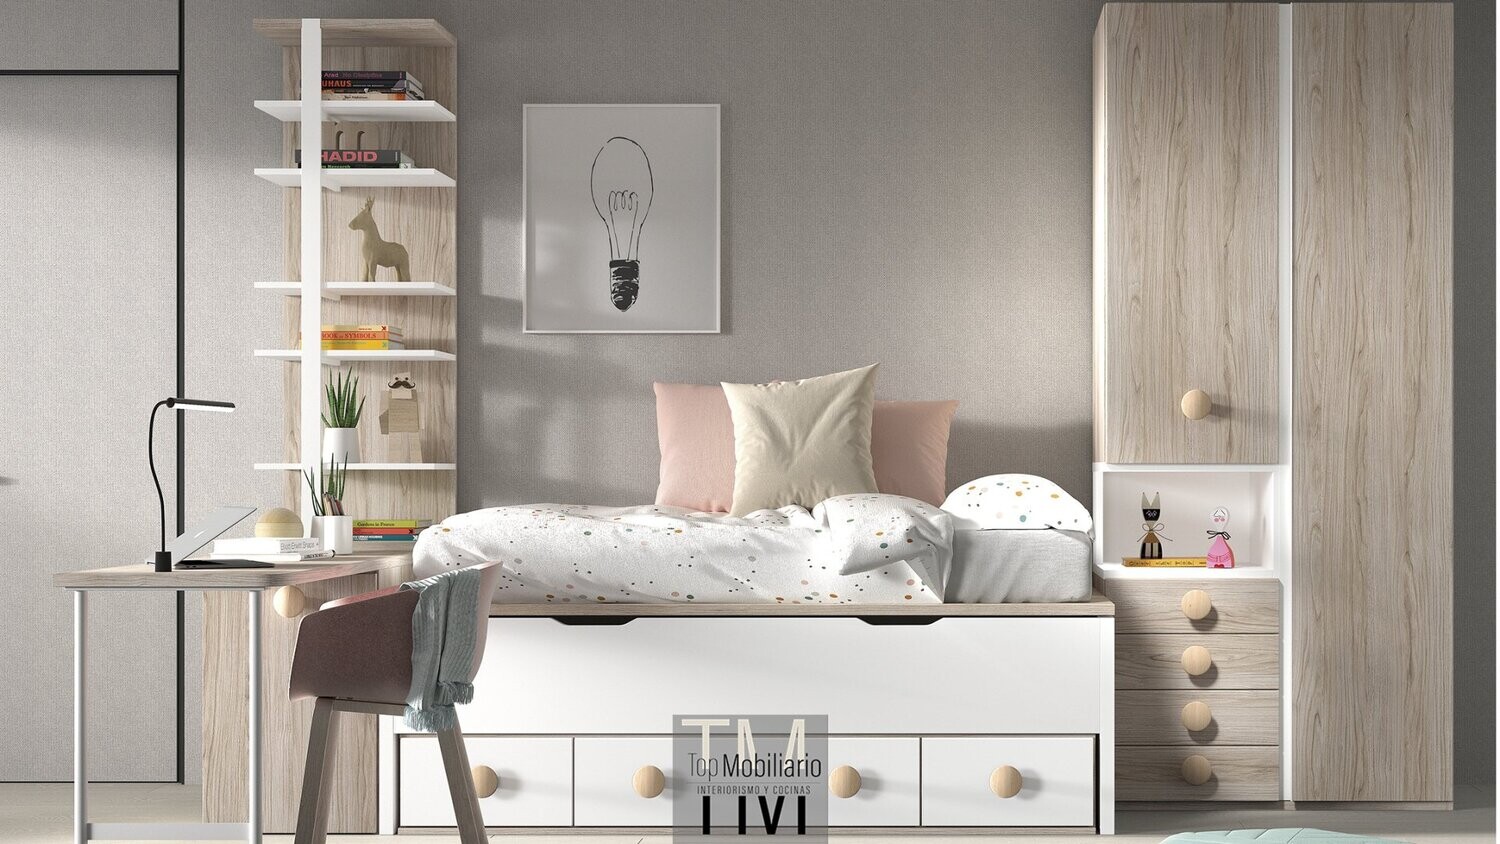 Dormitorio juvenil con cama compacta medida de colchones iguales